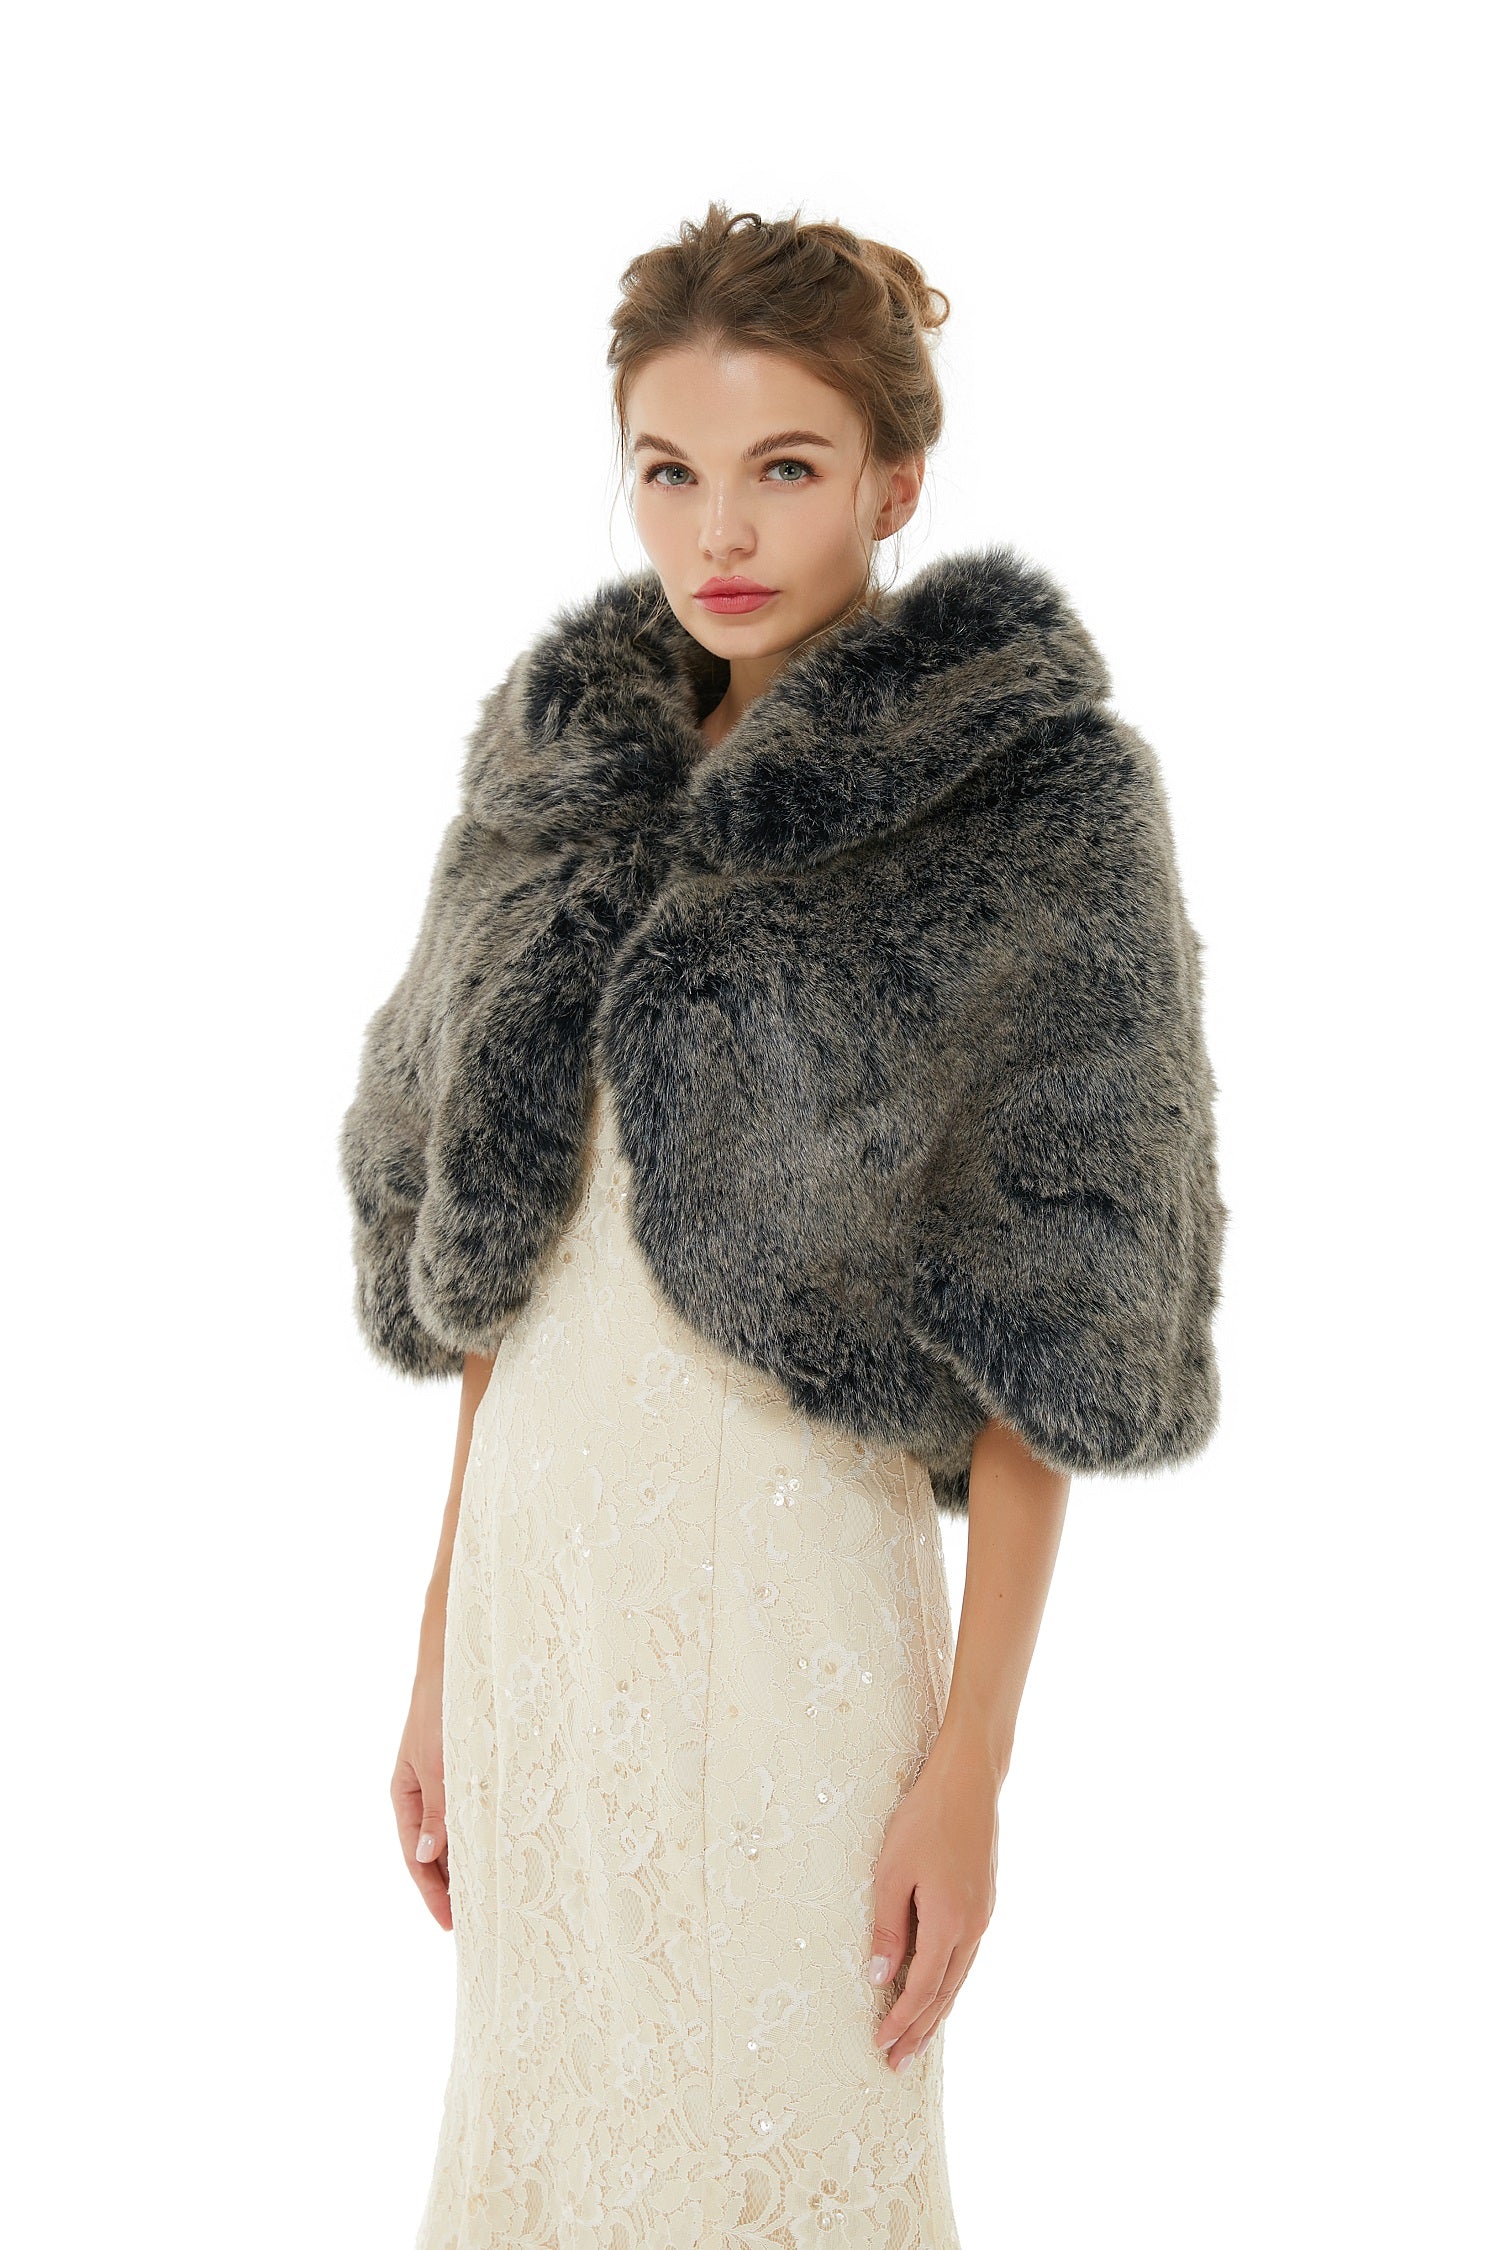 Luluslly Dark Grey Faux Fur Wrap for Winter Weddings